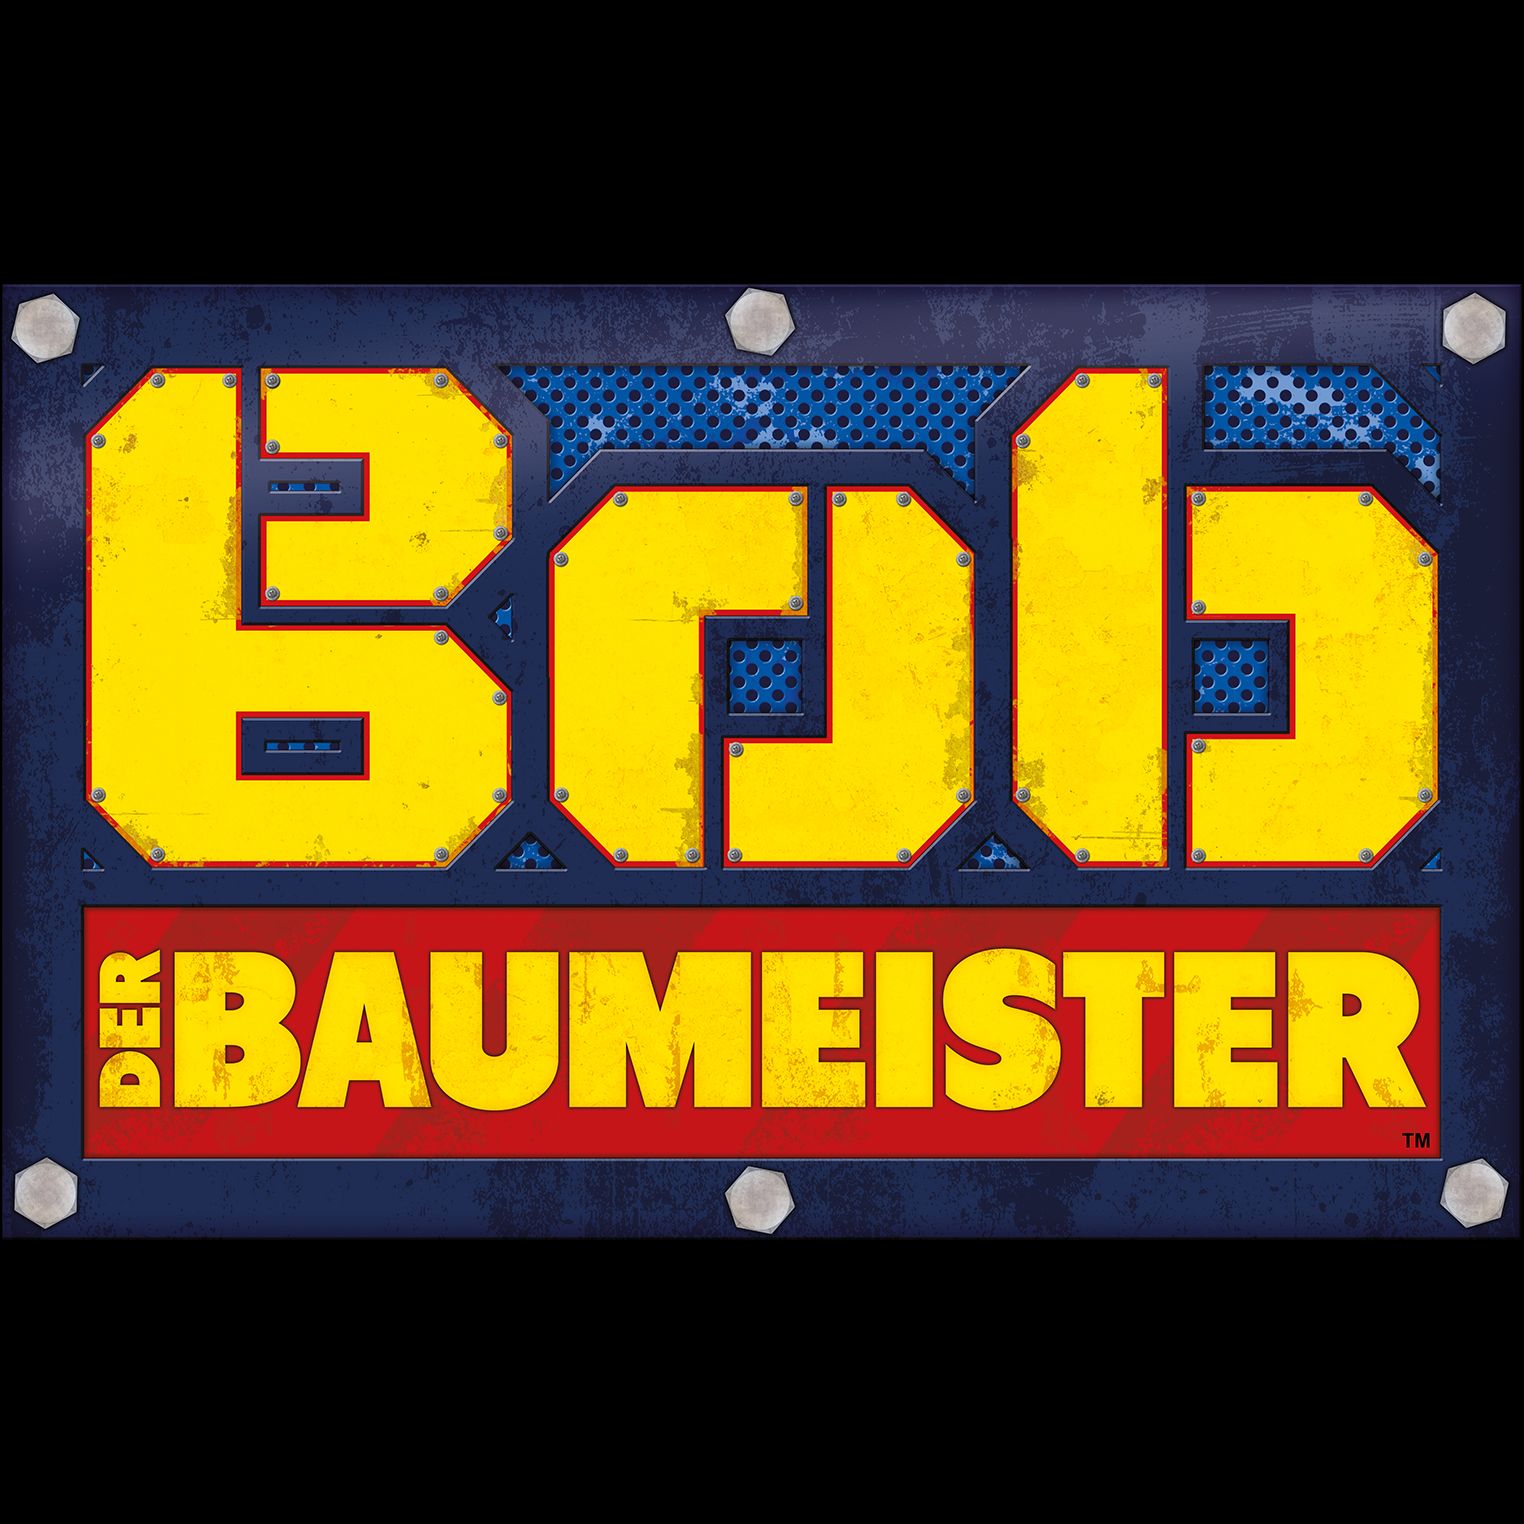  Bob der Baumeister - Staffel 1 ansehen